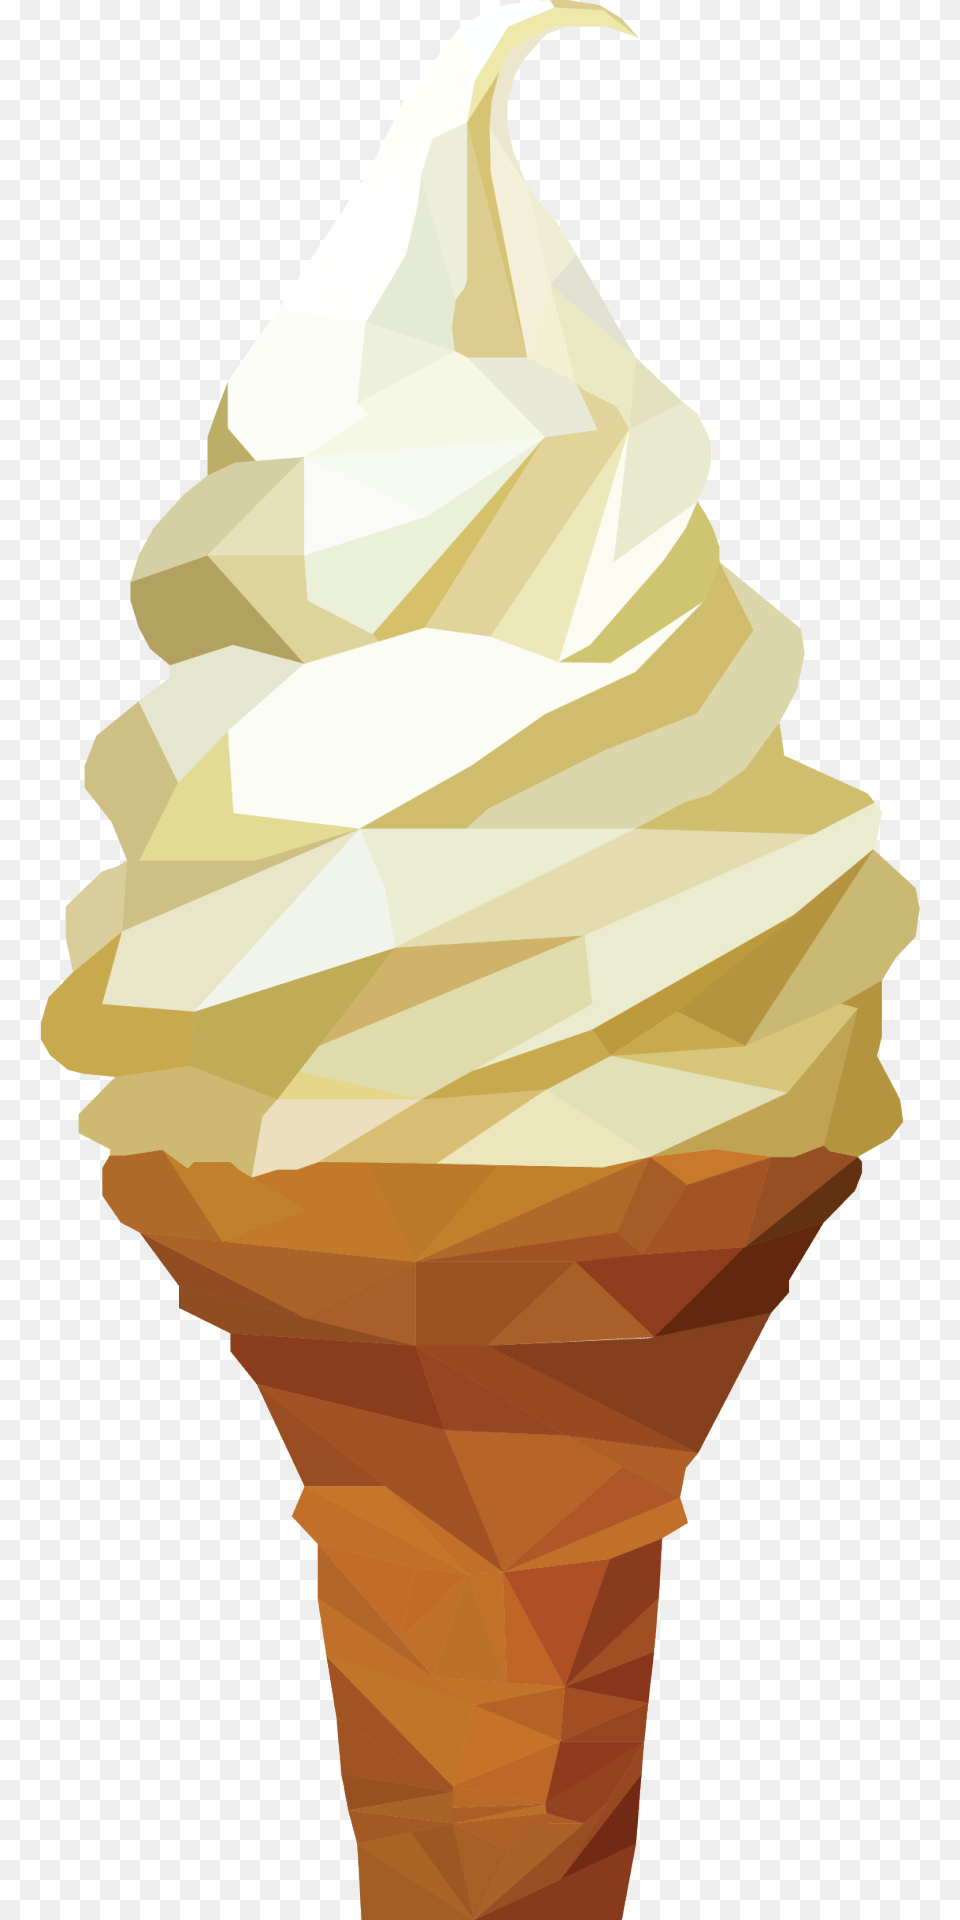 Transparent Geometric Tumblr Graphic Design, Cream, Dessert, Food, Ice Cream Png Image